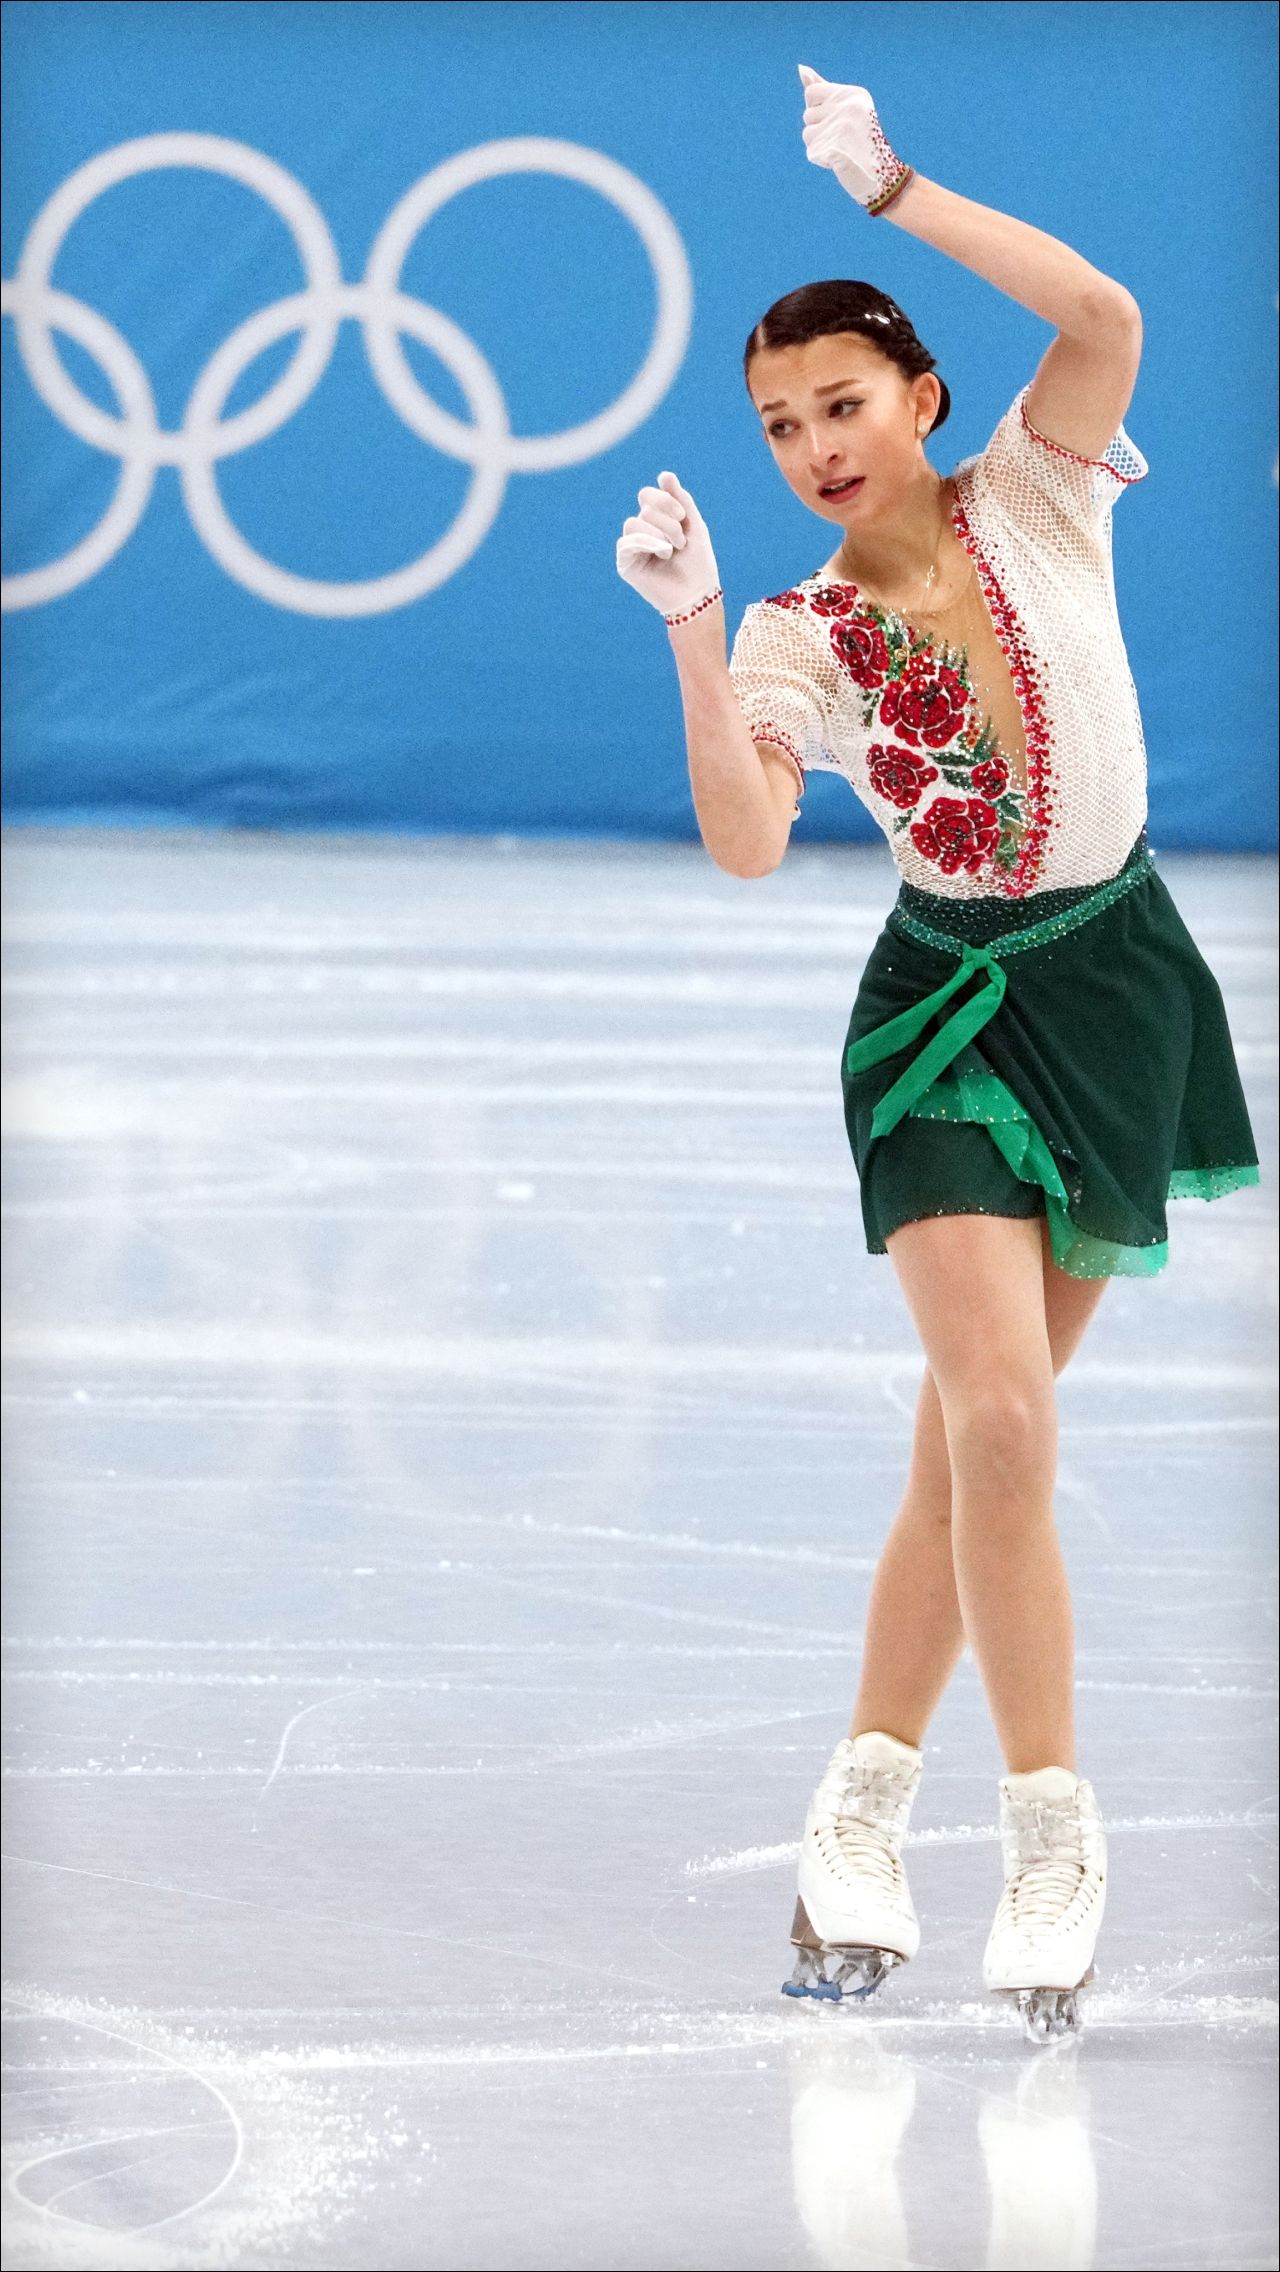 Шаботова рассказала про «правильный допинг»